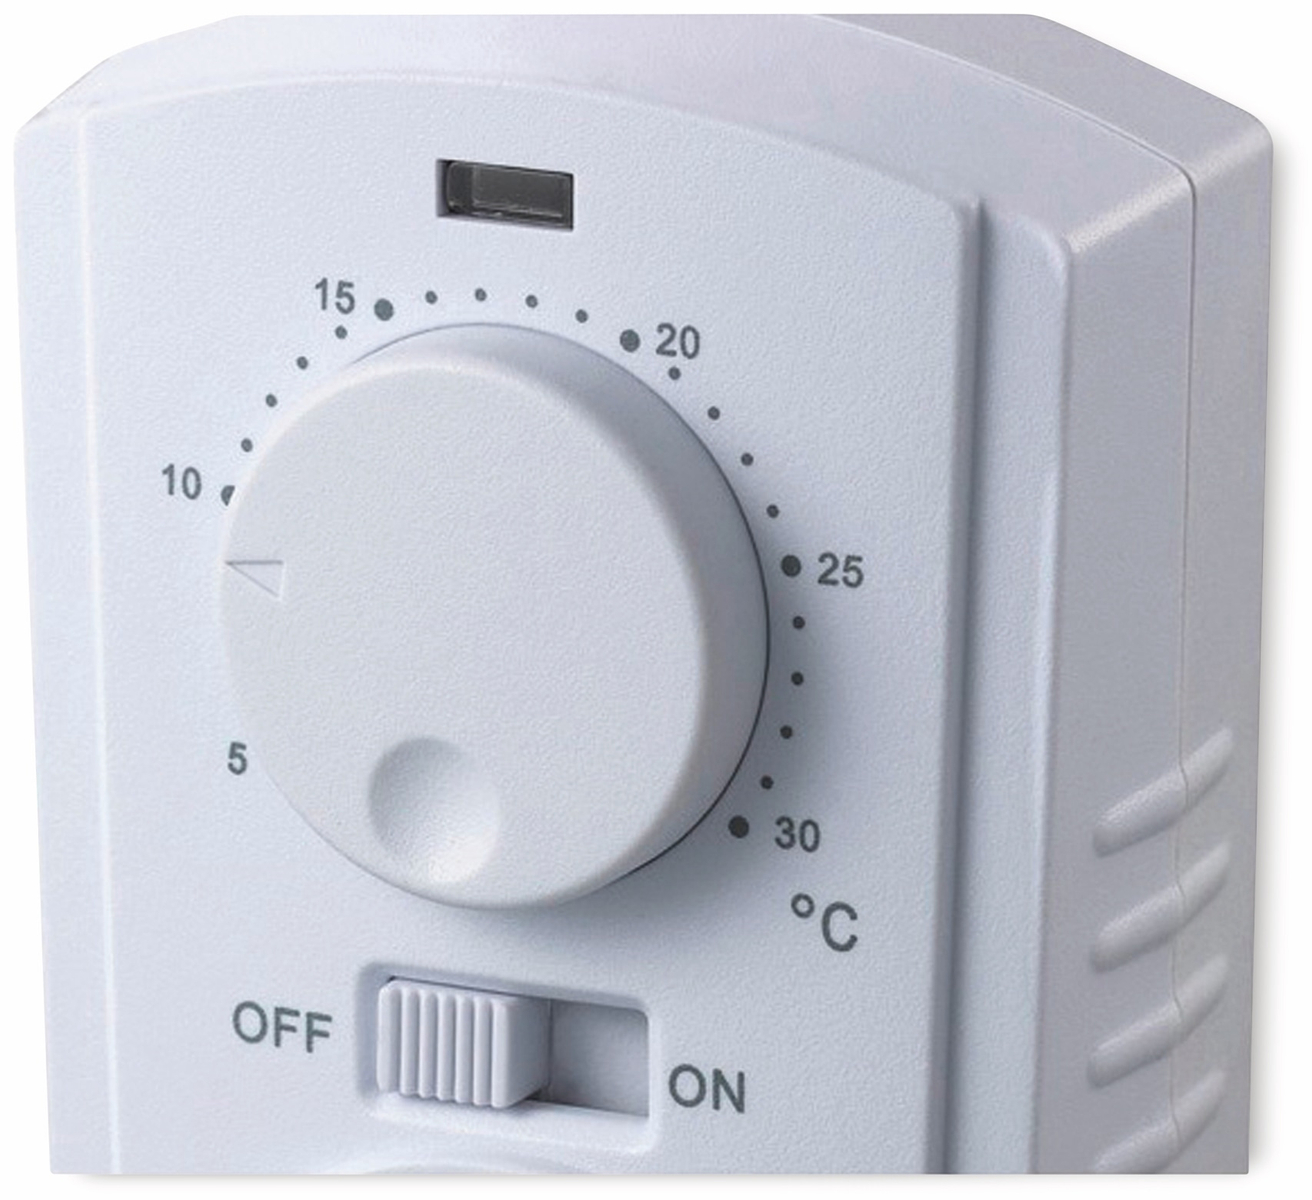 ChiliTec Analoges Steckdosen-Thermostat 230V mit externem Fühler I  Drehregler I max. 3500W I Für Heiz und Kühlgeräte in Terrarium Vogelzucht  Pflanzen